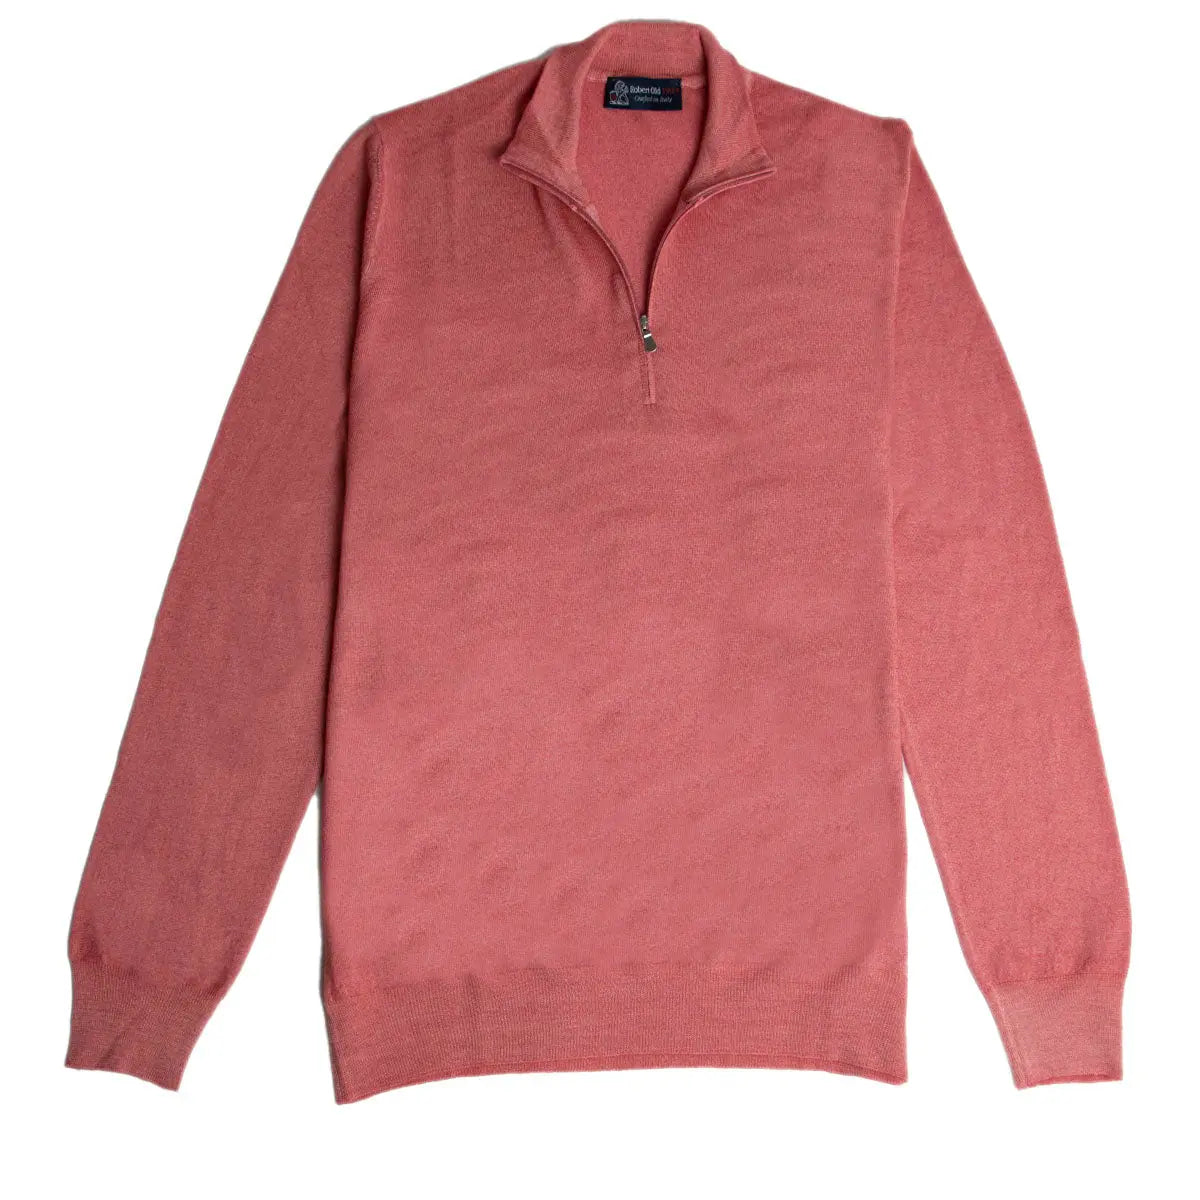 Pink Virgin Wool Fine Knit Quarter Zip Sweater  Robert Old   